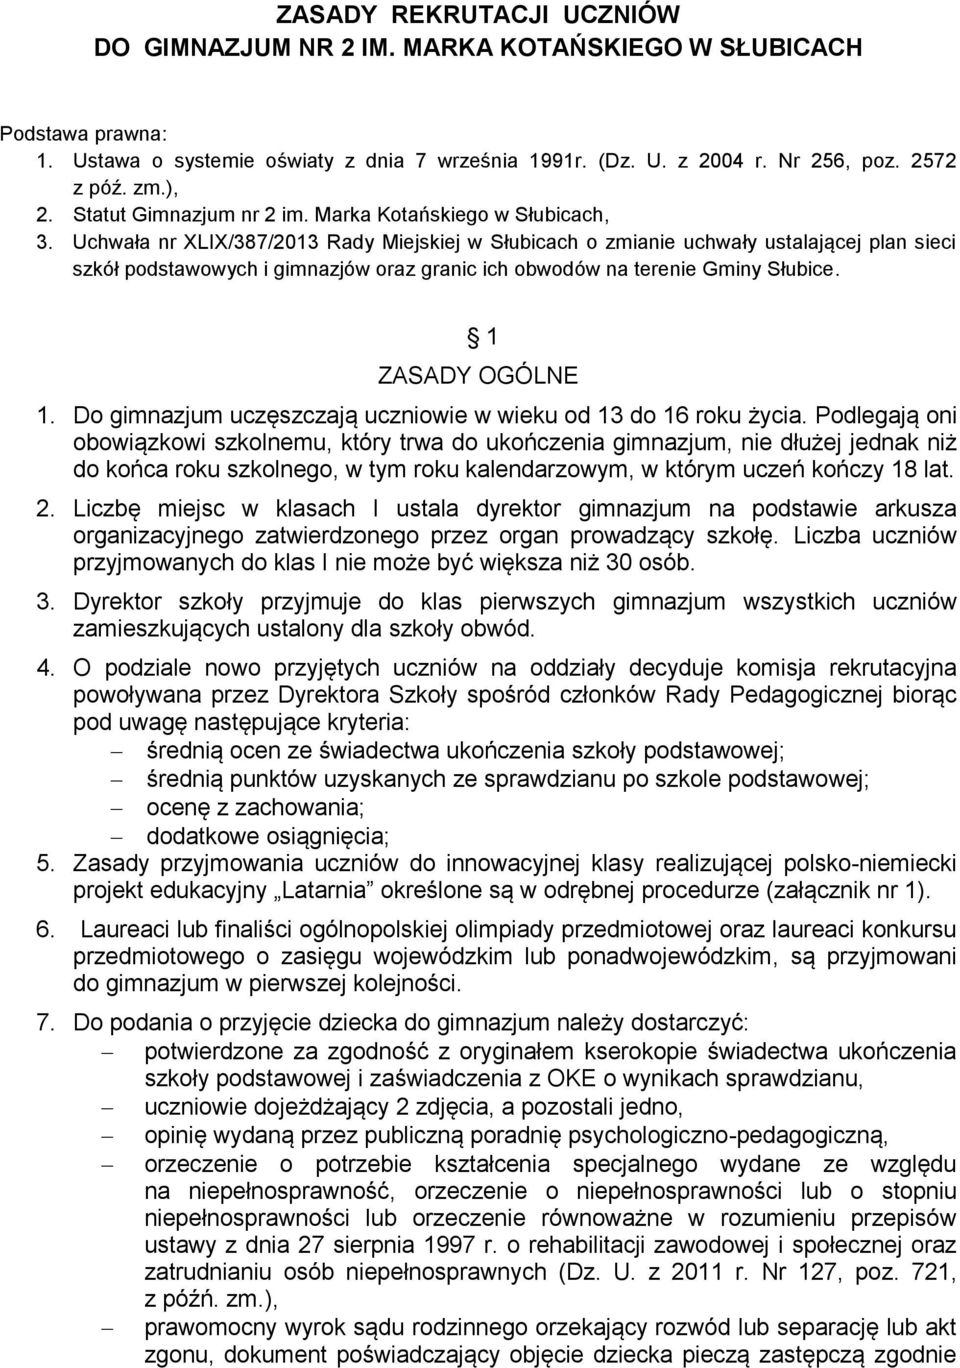 Uchwała nr XLIX/387/2013 Rady Miejskiej w Słubicach o zmianie uchwały ustalającej plan sieci szkół podstawowych i gimnazjów oraz granic ich obwodów na terenie Gminy Słubice. 1 ZASADY OGÓLNE 1.